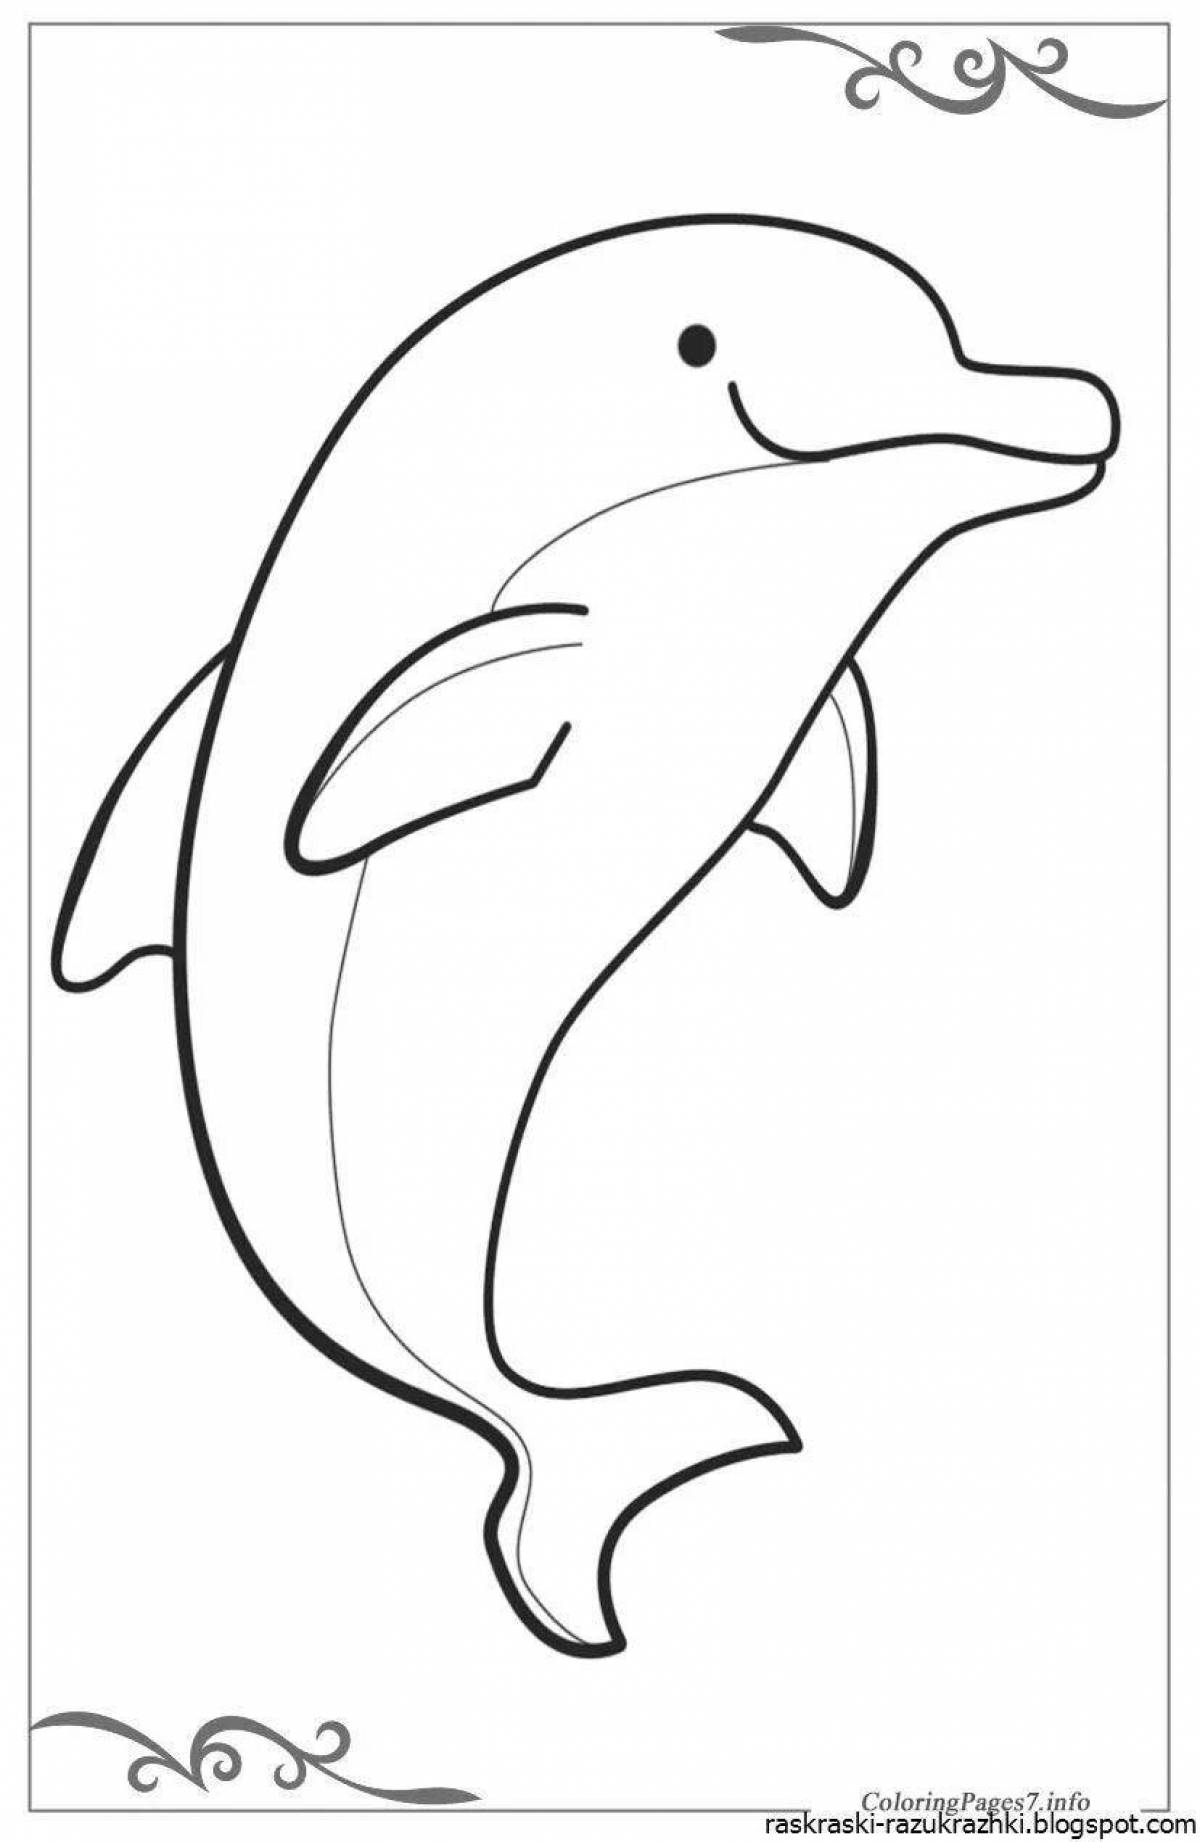 Изысканная раскраска дельфинов для детей